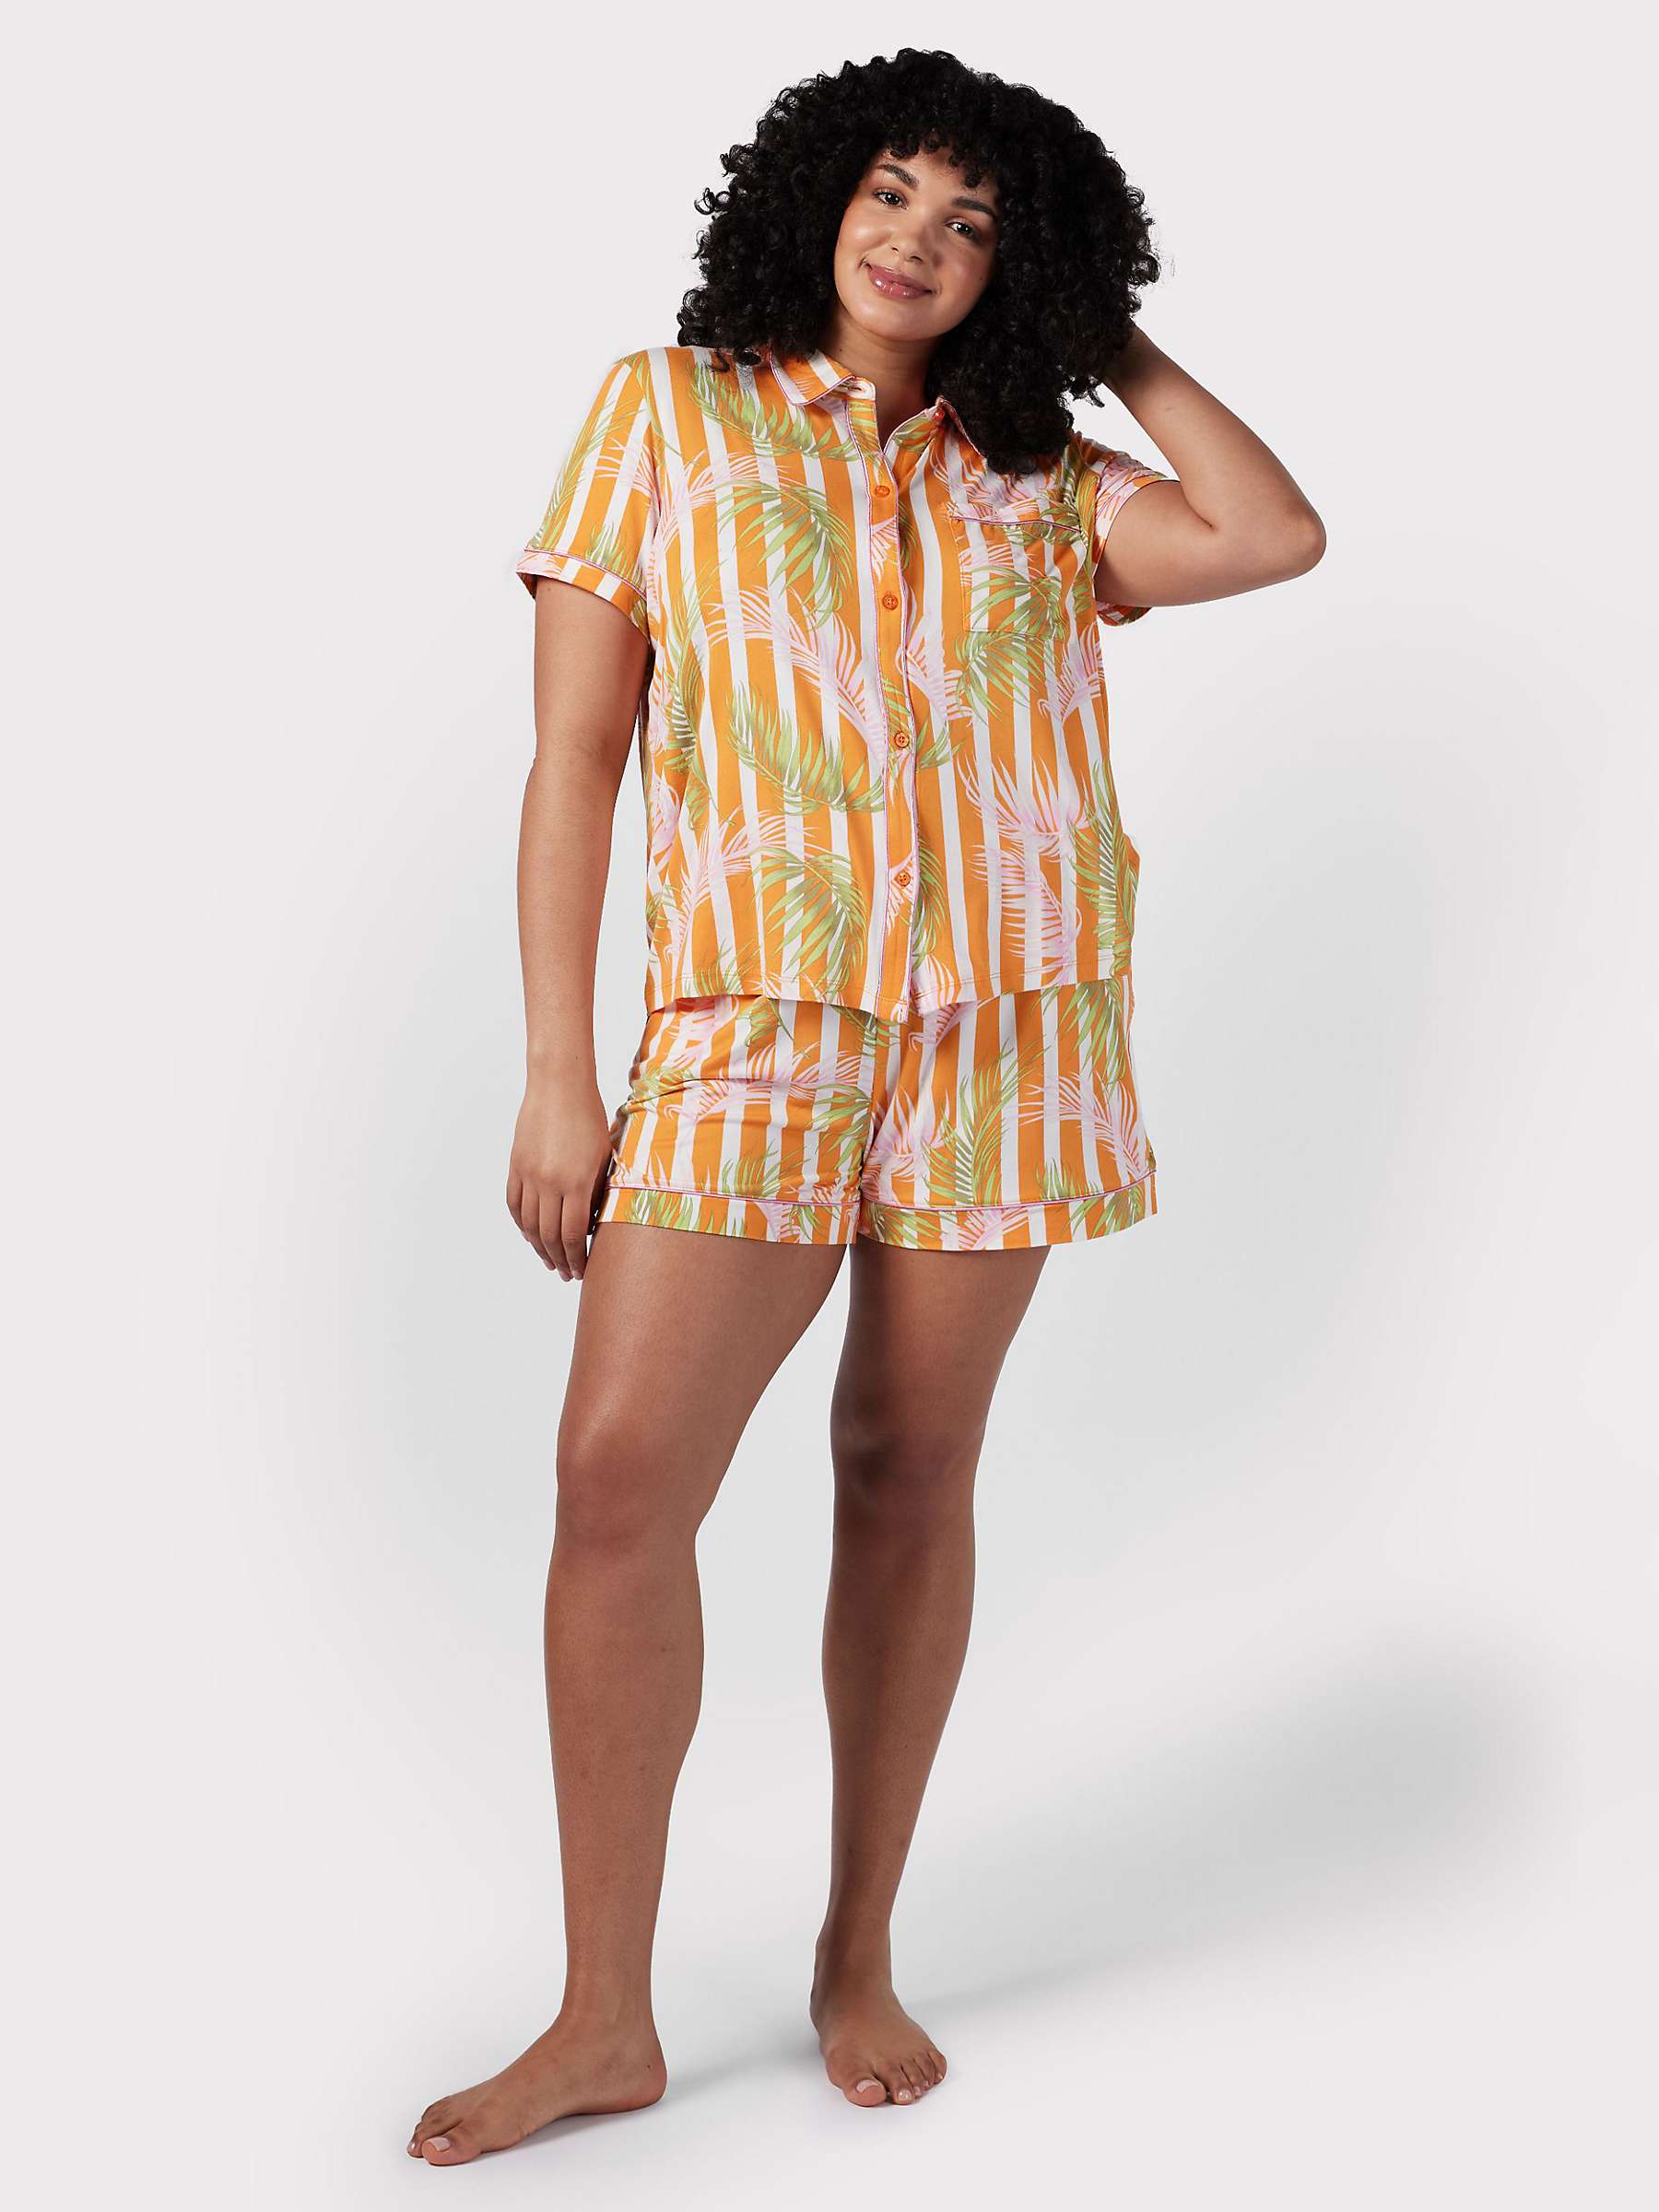 Buy Chelsea Peers Curve Palm Stripe Short Pyjamas, Orange/Multi Online at johnlewis.com